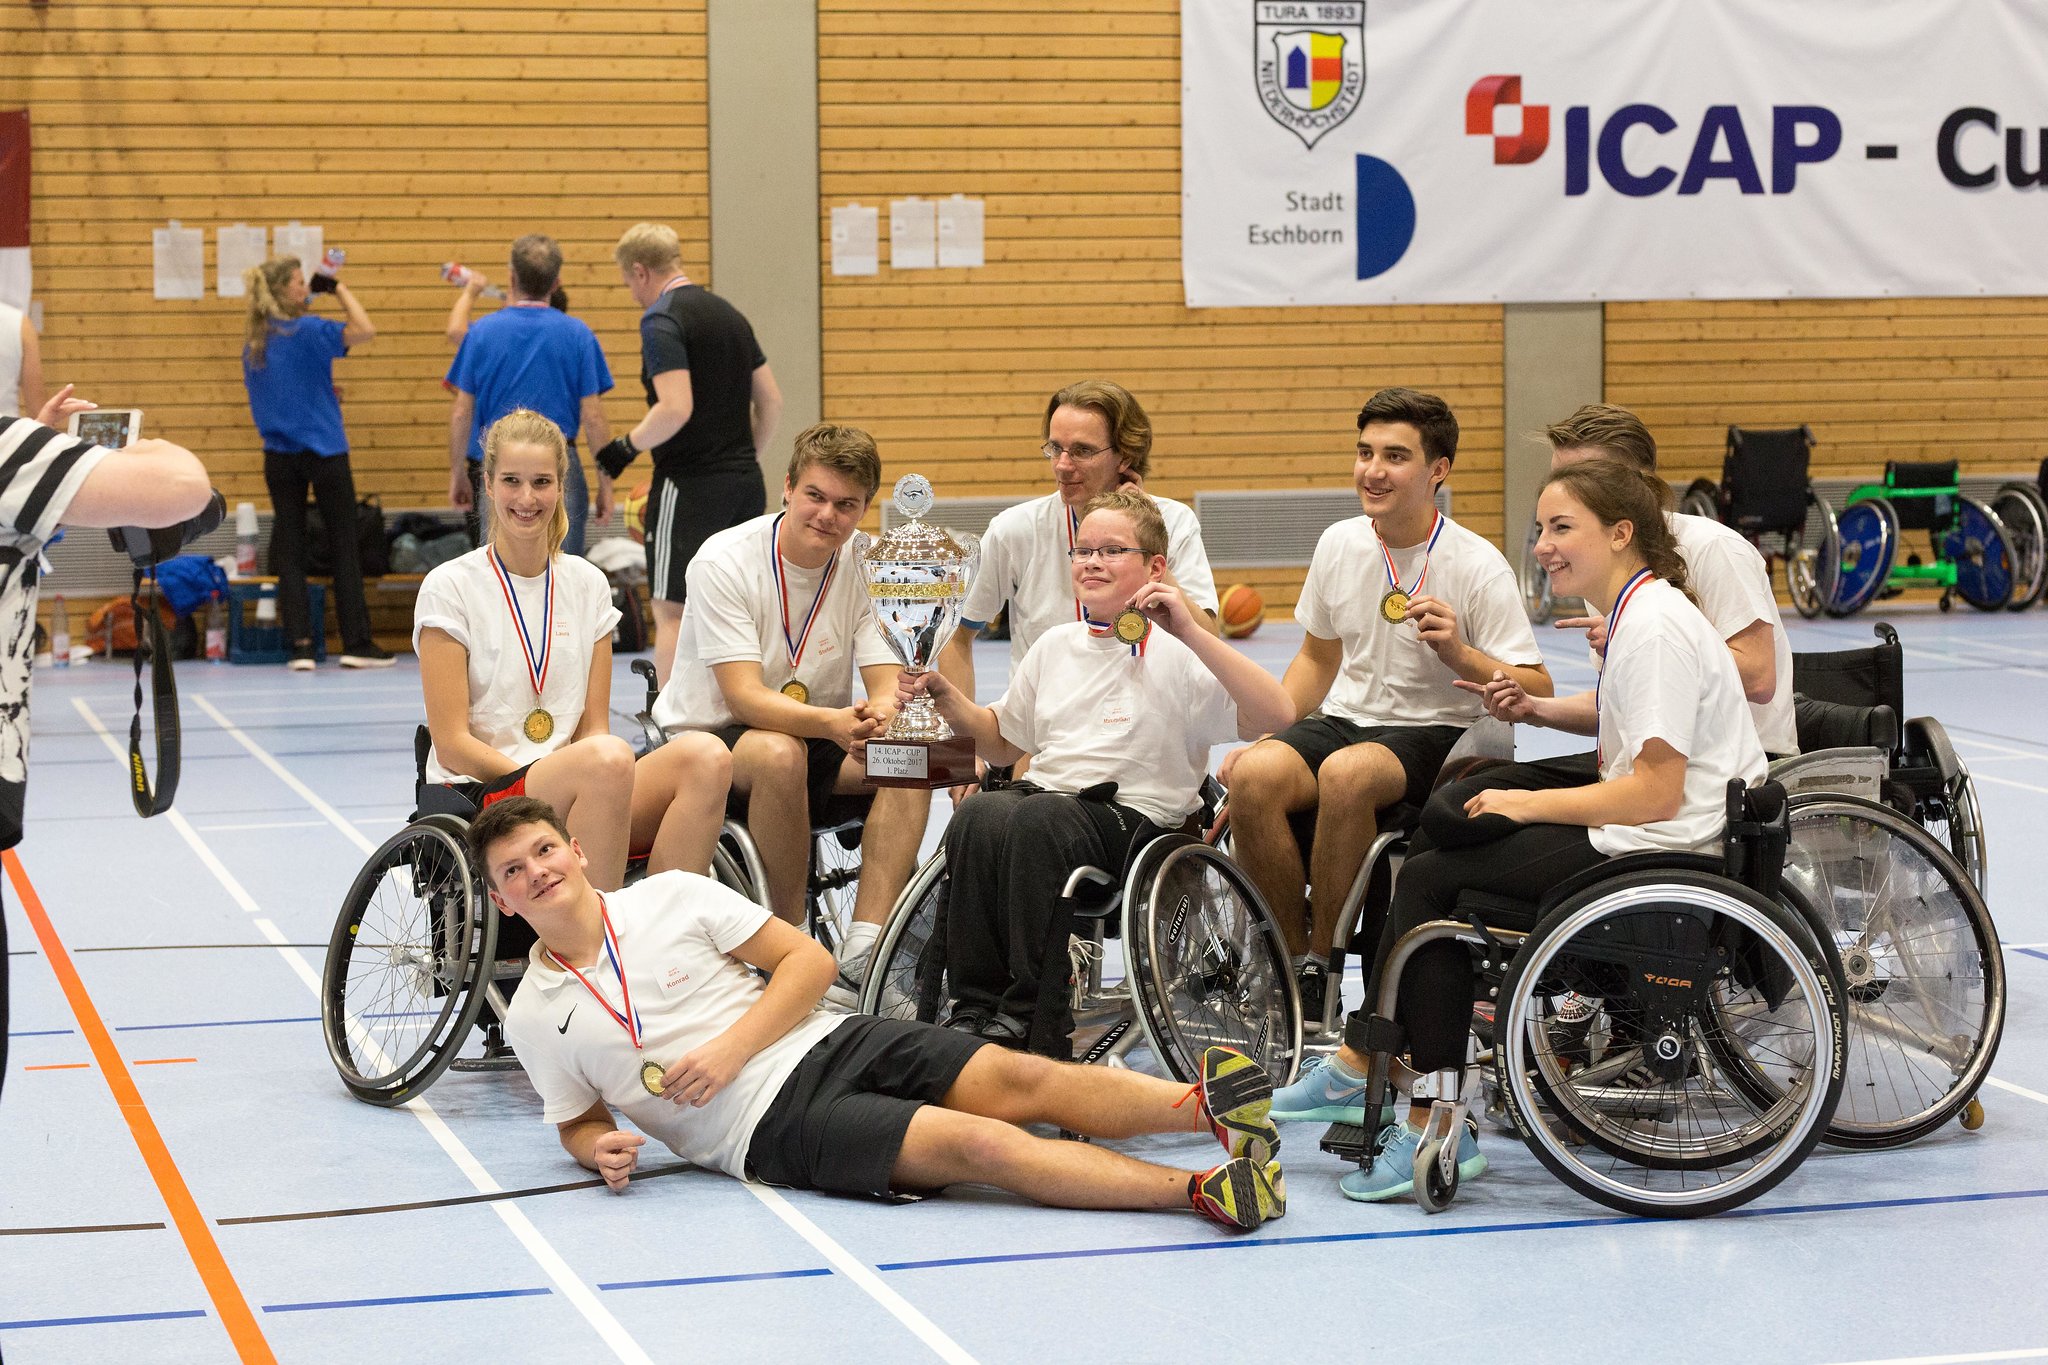 Gruppenbild der Sieger beim ICAP-CUP 2017